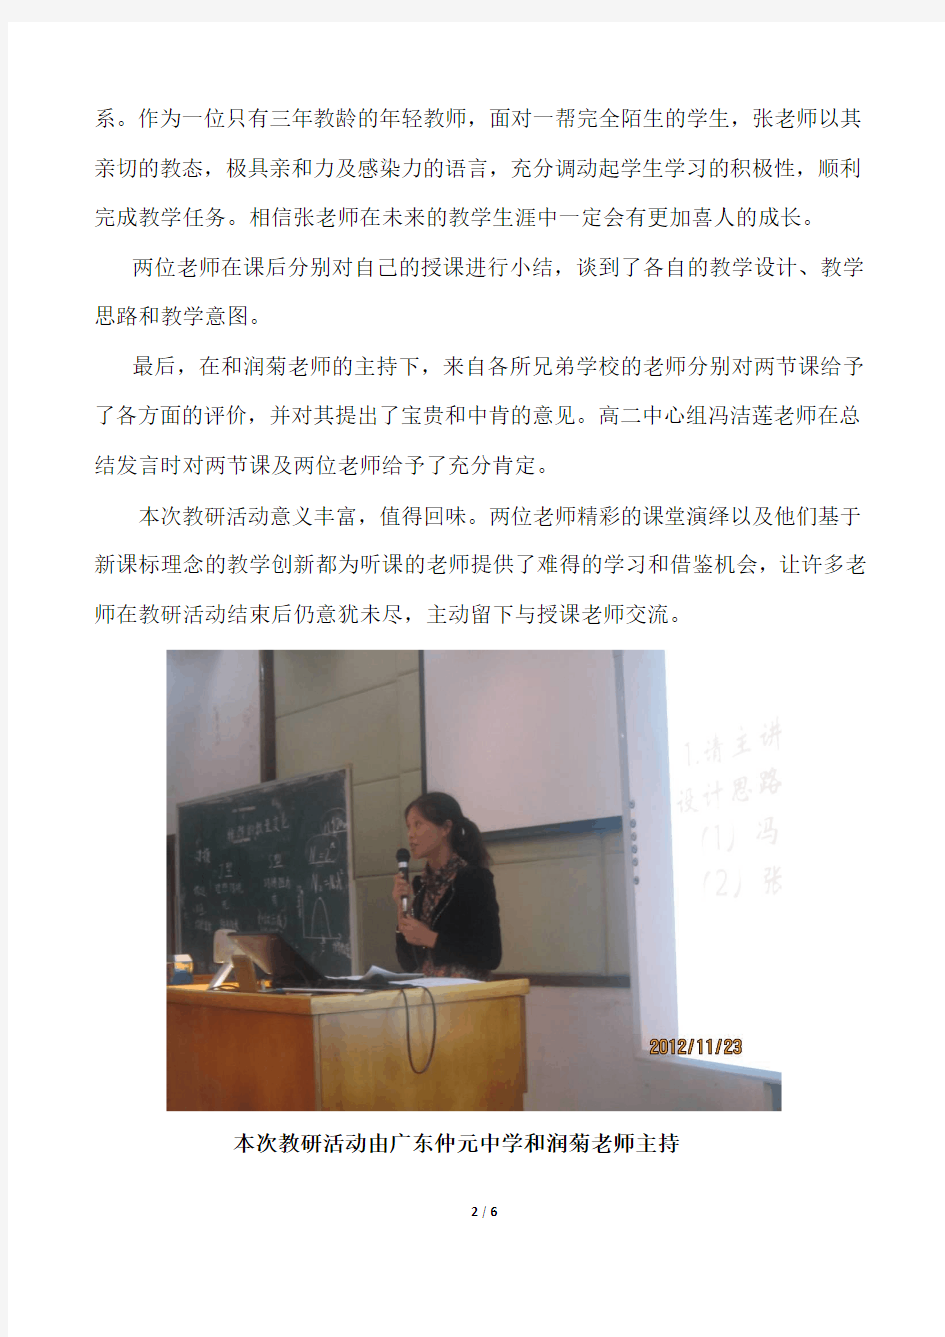 广东广雅中学冯明董老师的授课饱含数学思维